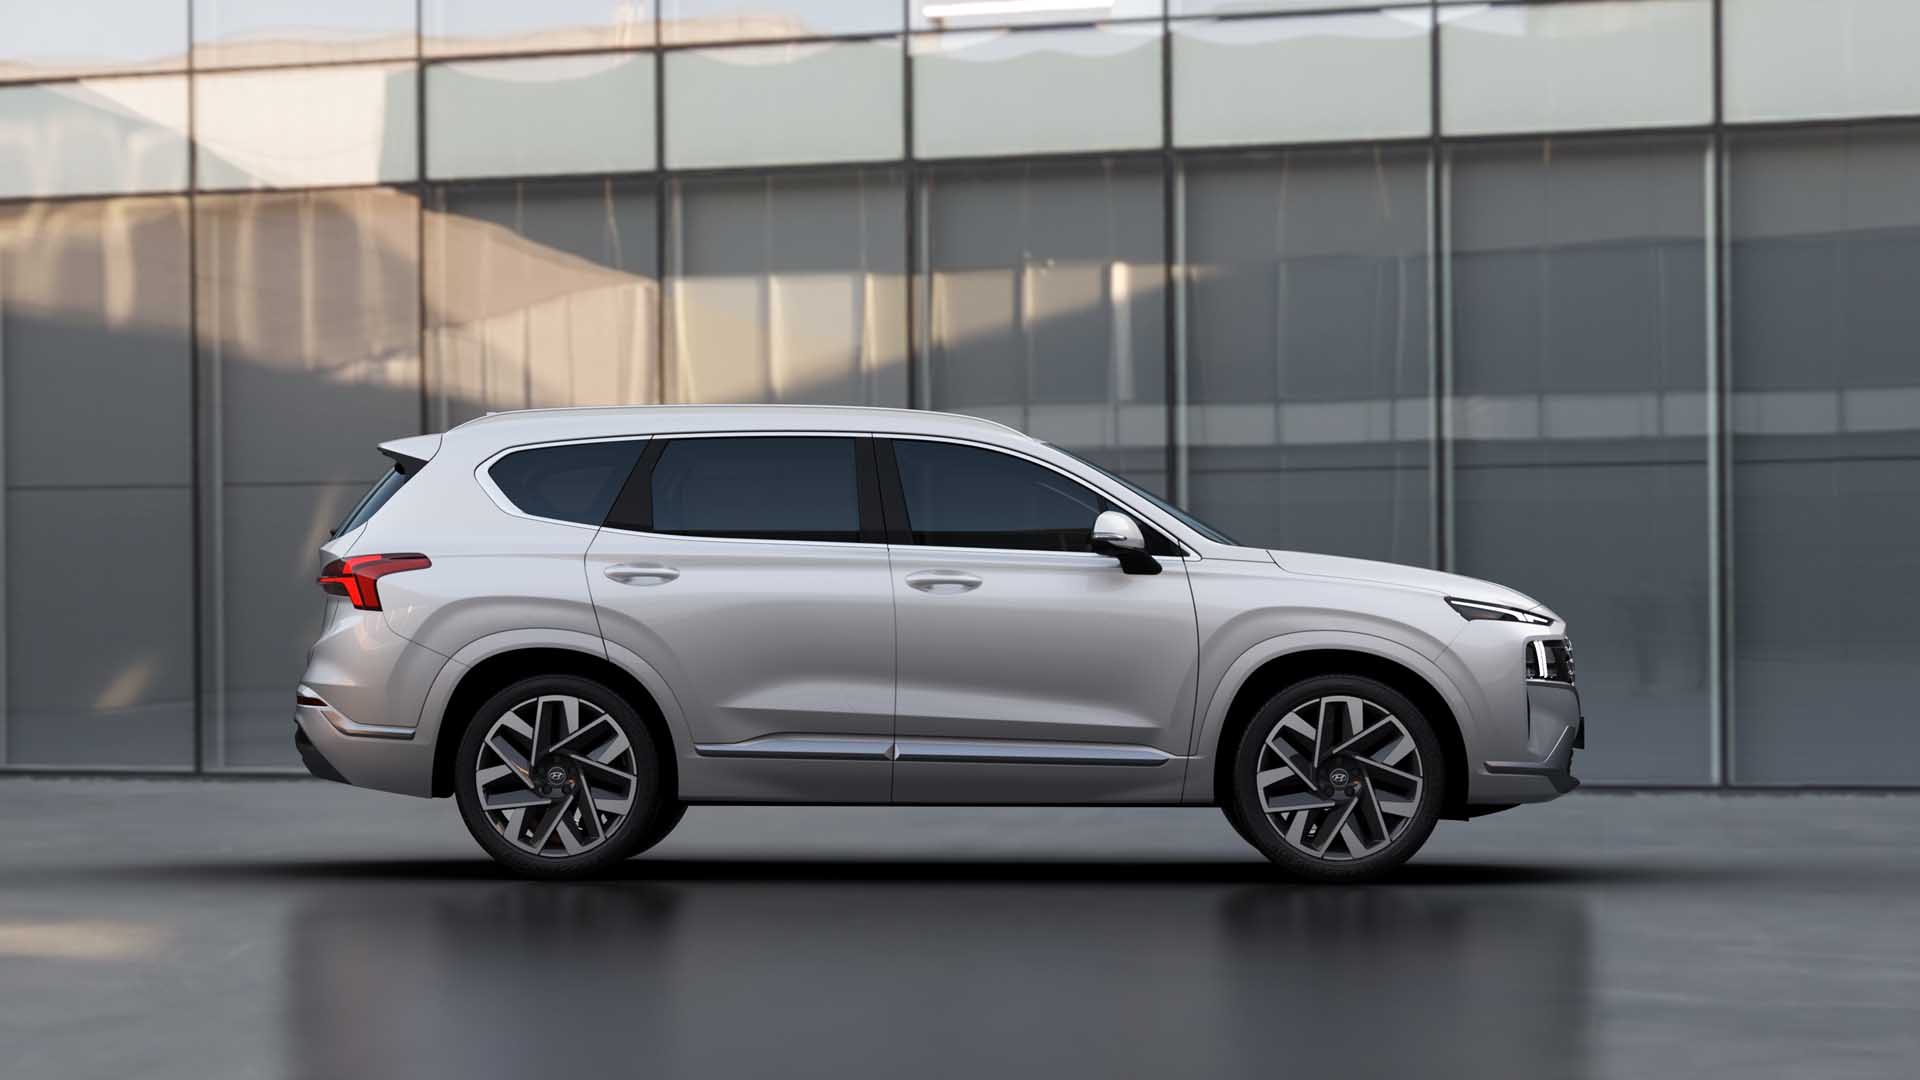 Phiên bản mới của Hyundai Santa Fe chính thức mở bán, mức giá khiến Toyota Fortuner kinh ngạc ảnh 2